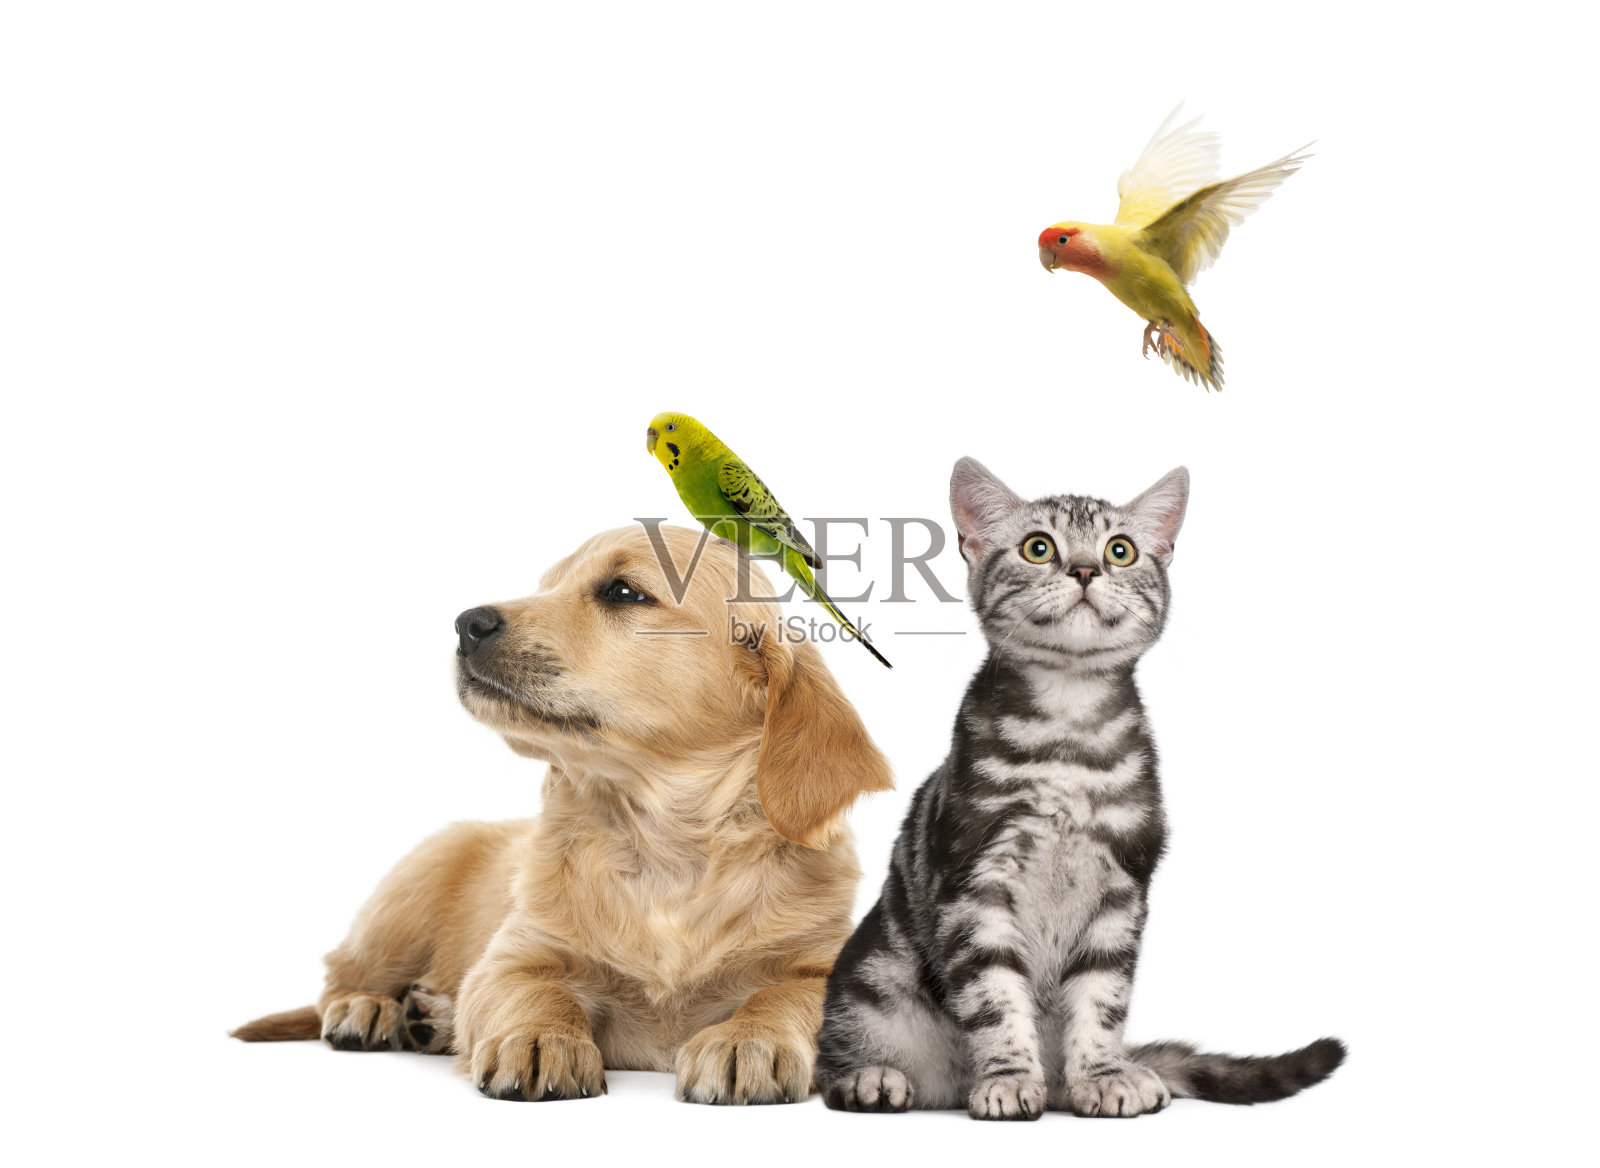 一只金毛猎犬和一只长尾小鹦鹉躺在一起照片摄影图片